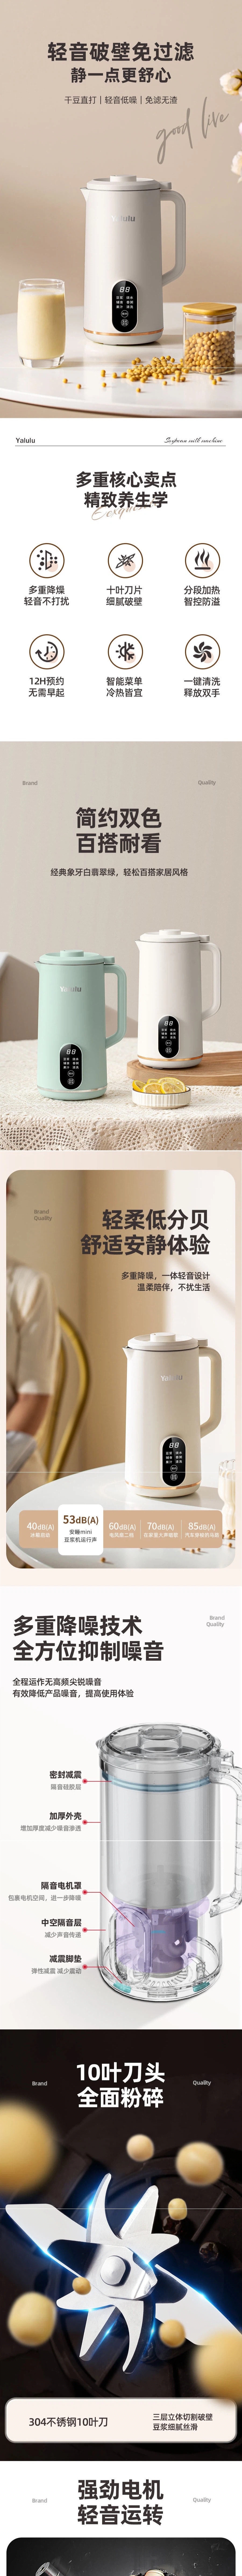 【中国直邮】YALULU 豆浆机 650ml 多功能免煮免过滤全自动智能破壁机 110V 白色